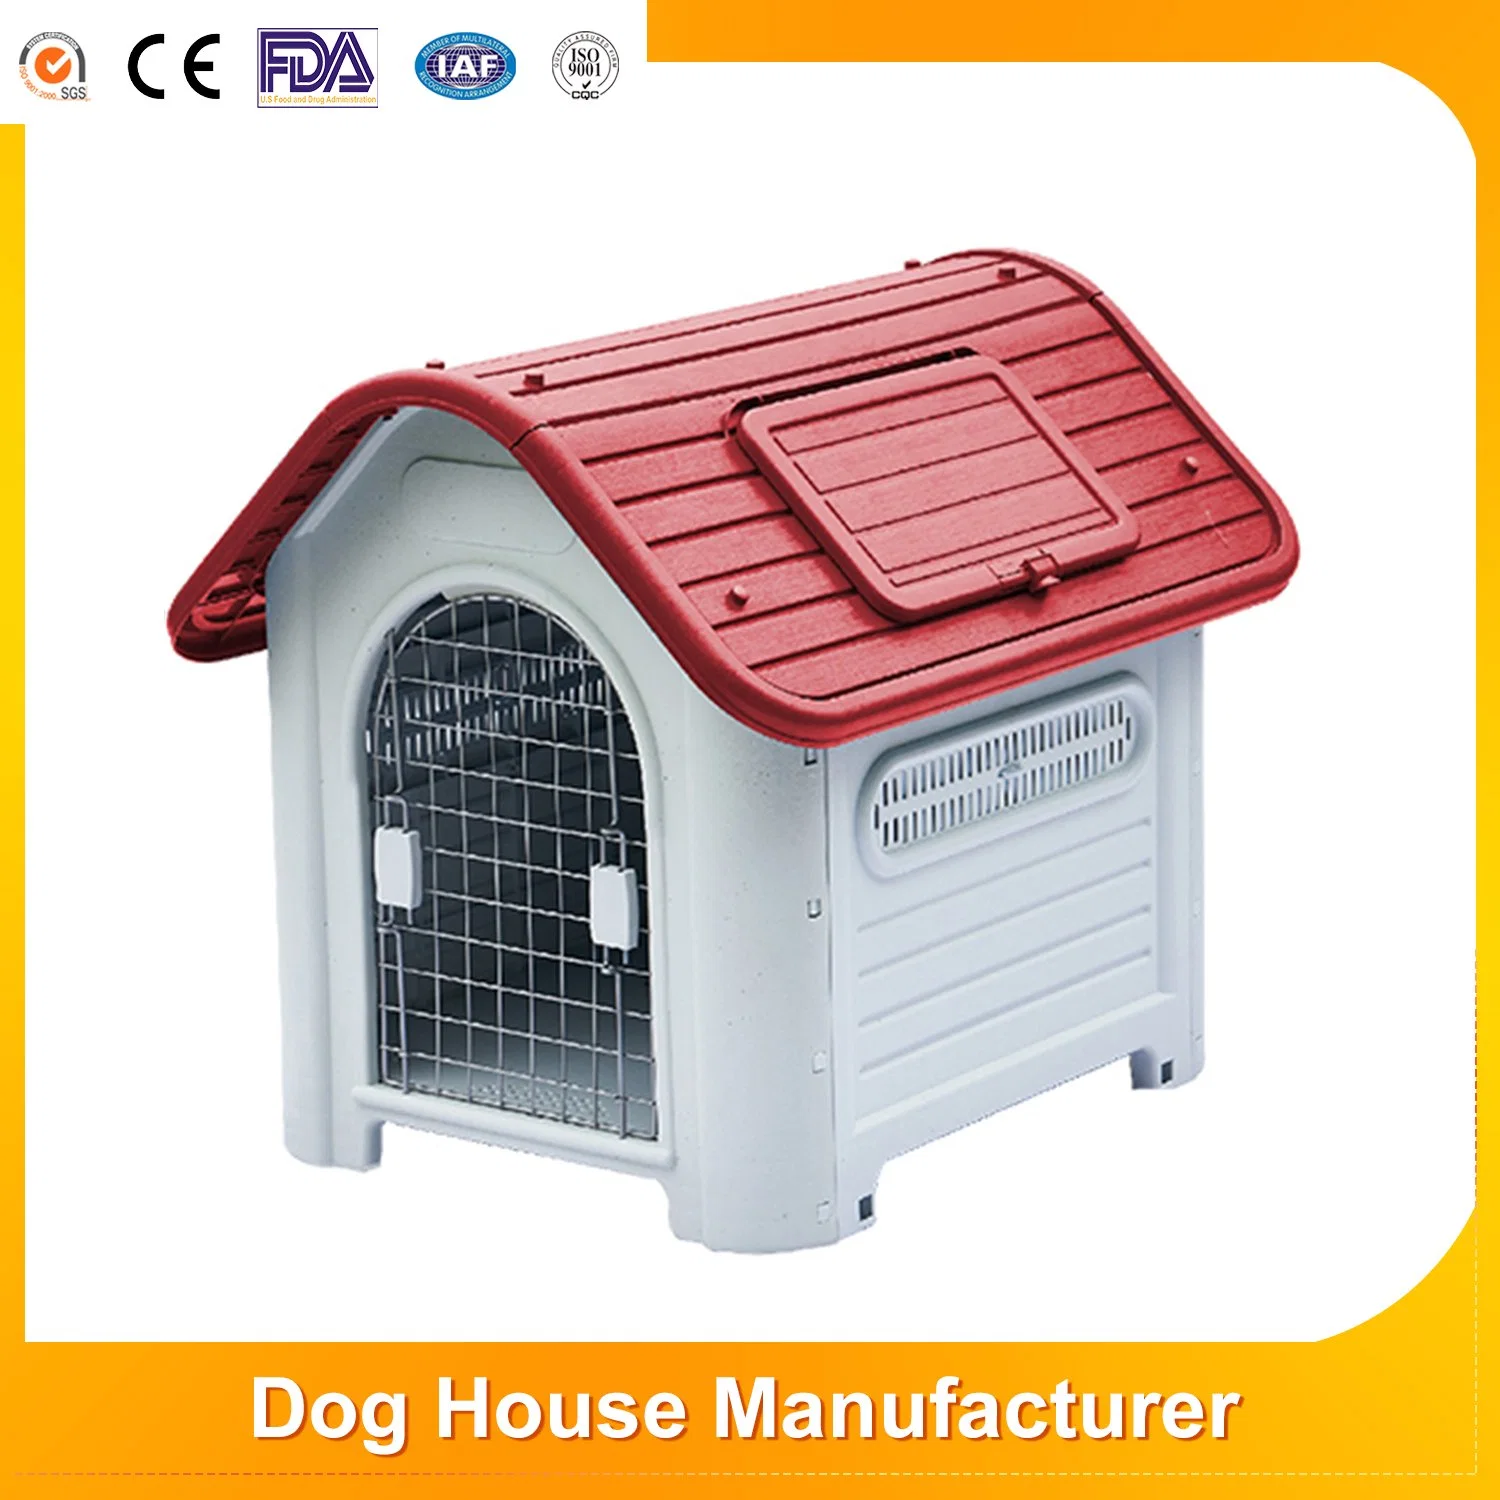 Vente à chaud ventilateur étanche Grand abri de cage en plastique pour chiens étanche Et écran solaire amovible pour animaux de compagnie